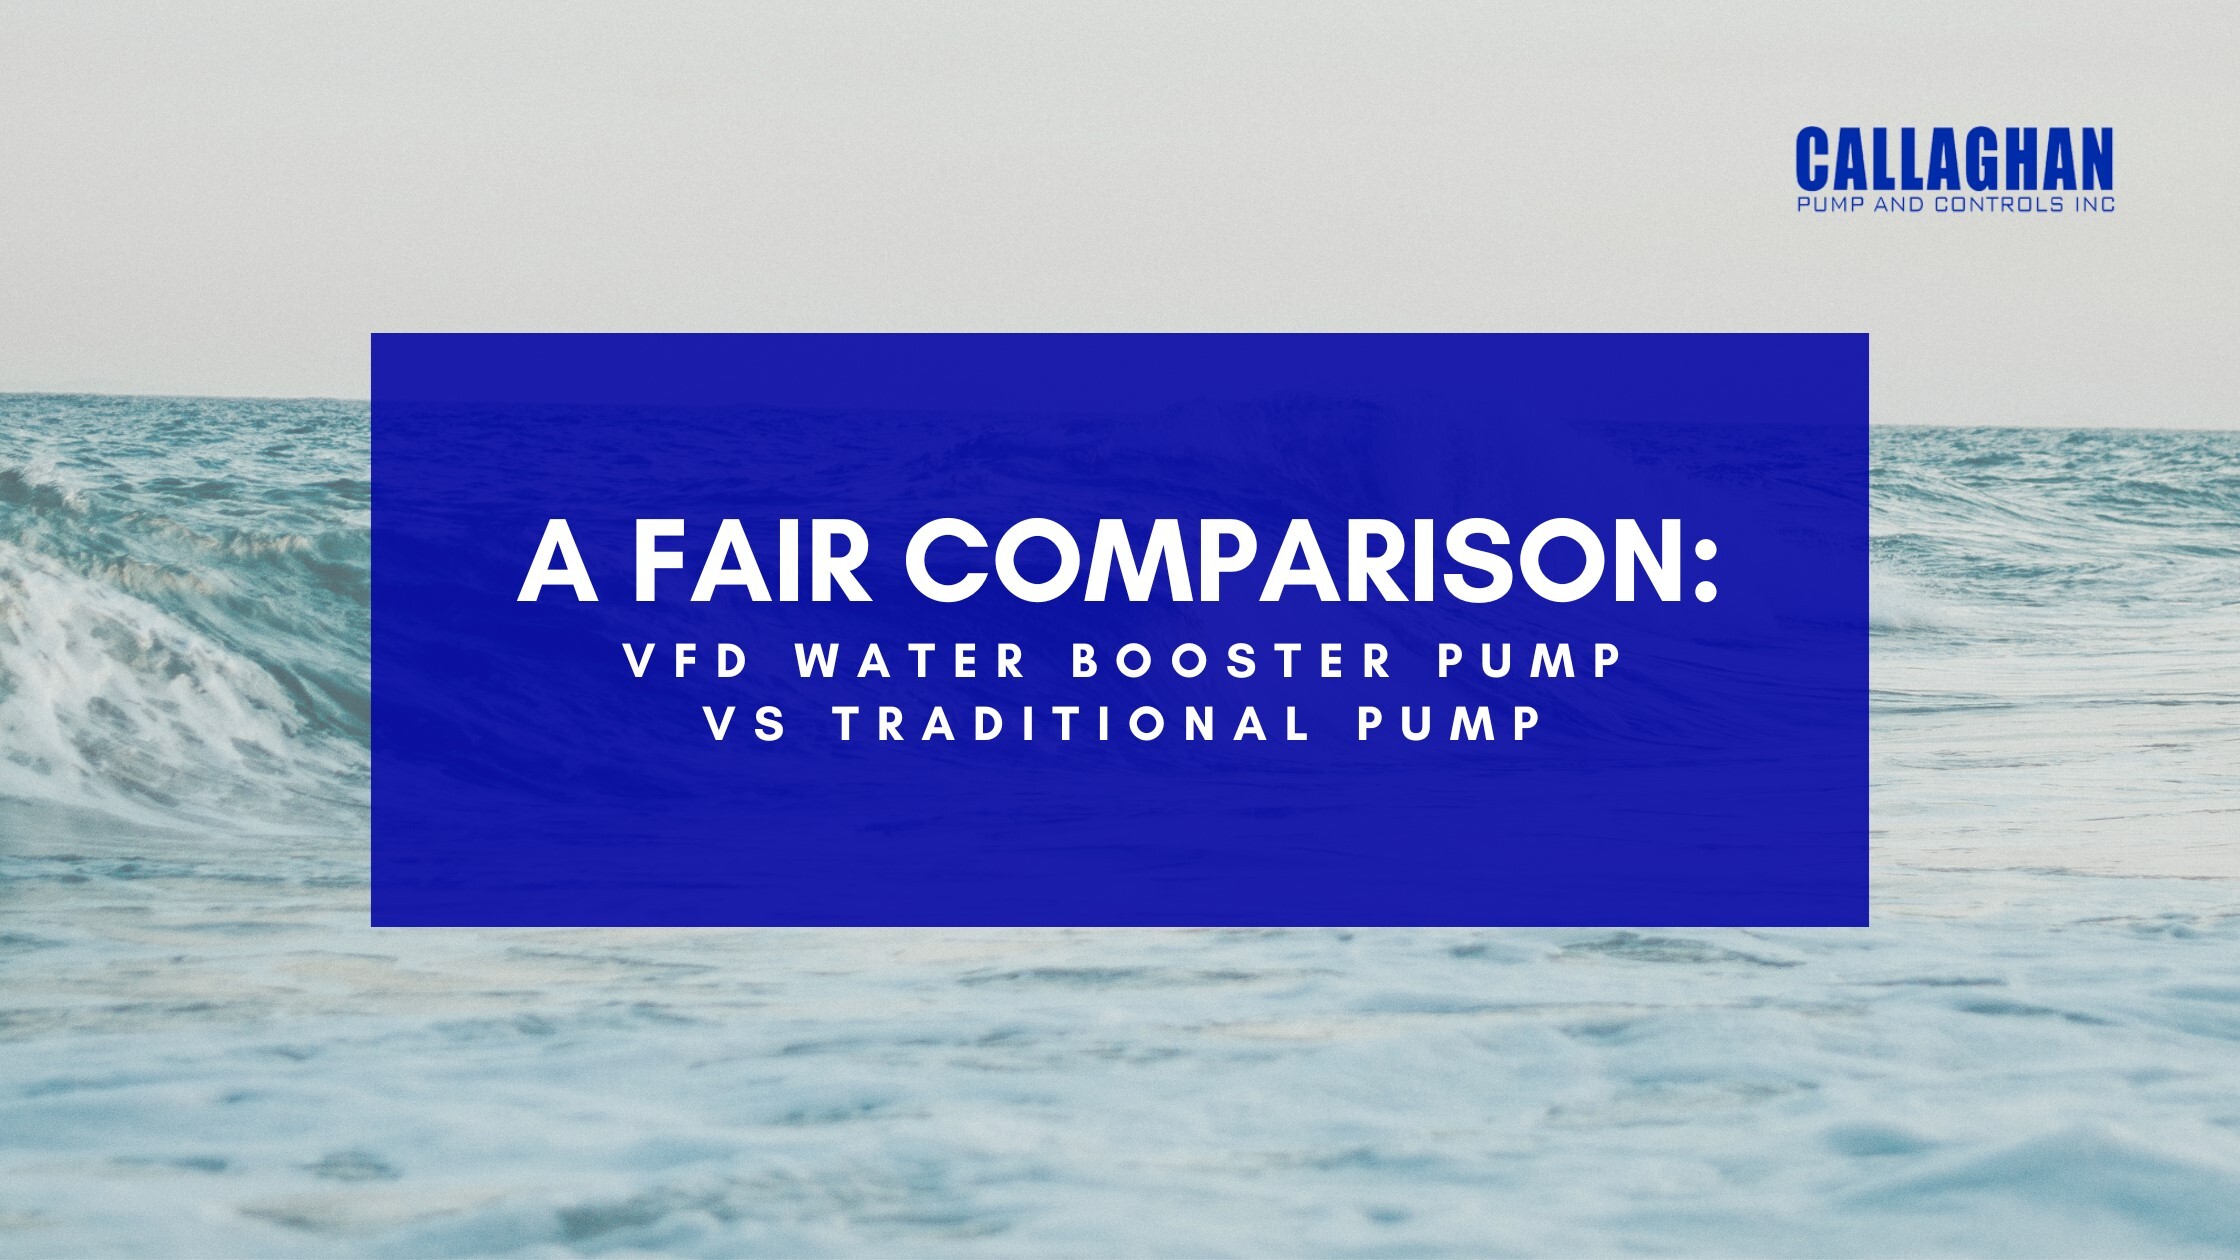 VFD Water Booster Pump